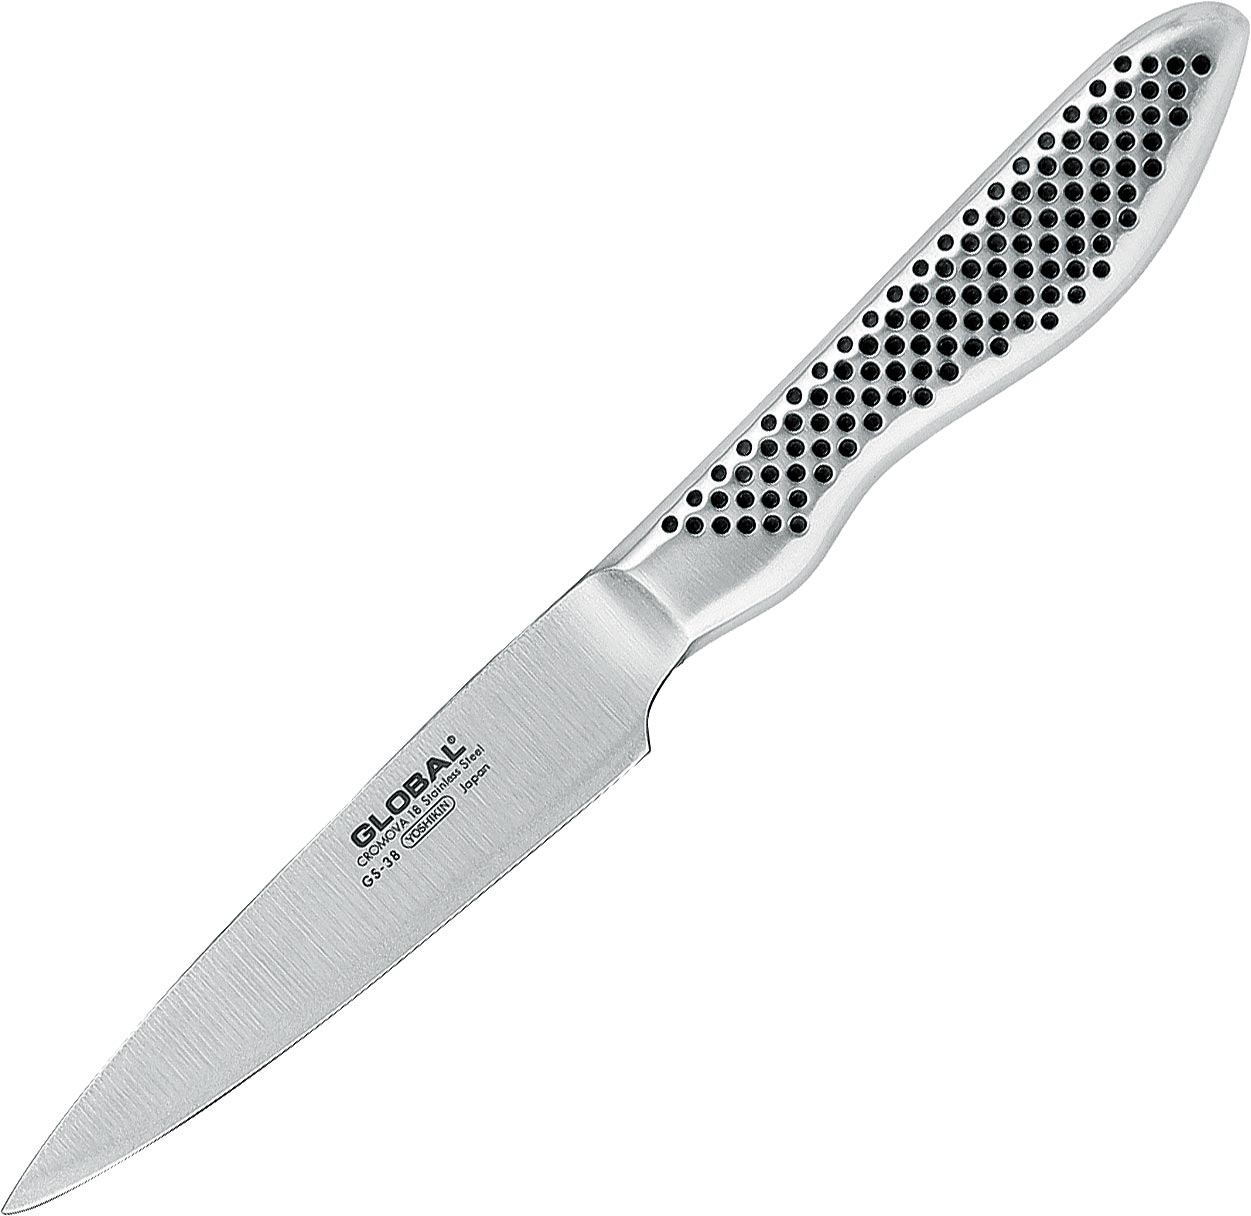 GS-38 Paring Knife 9cm